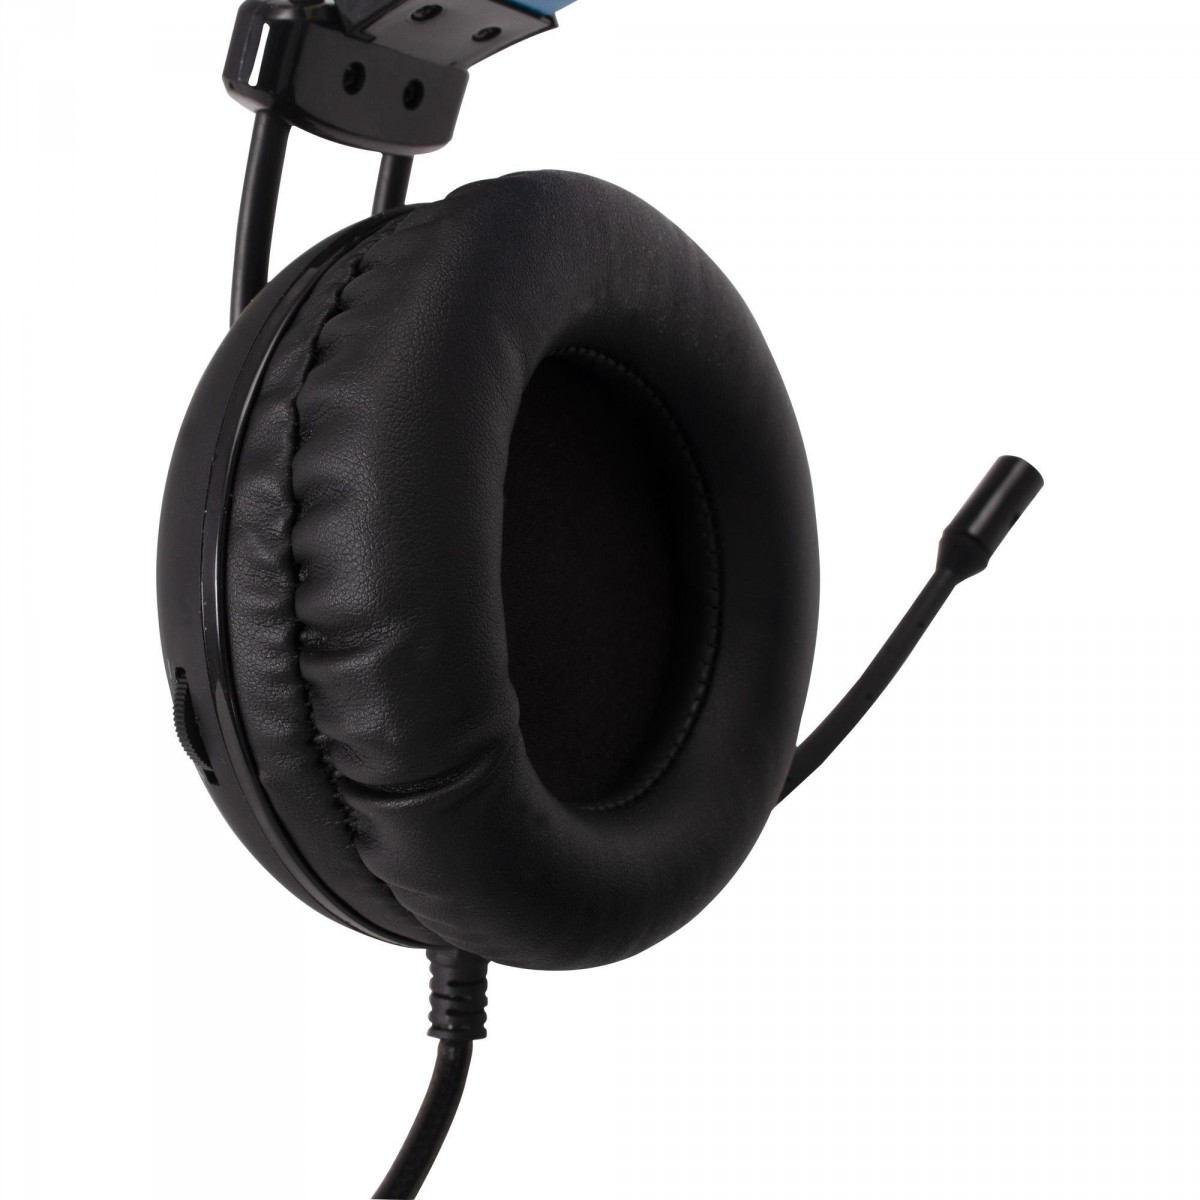 Headset Gamer Fortrek Pro H2 Led Azul Preto, 64390